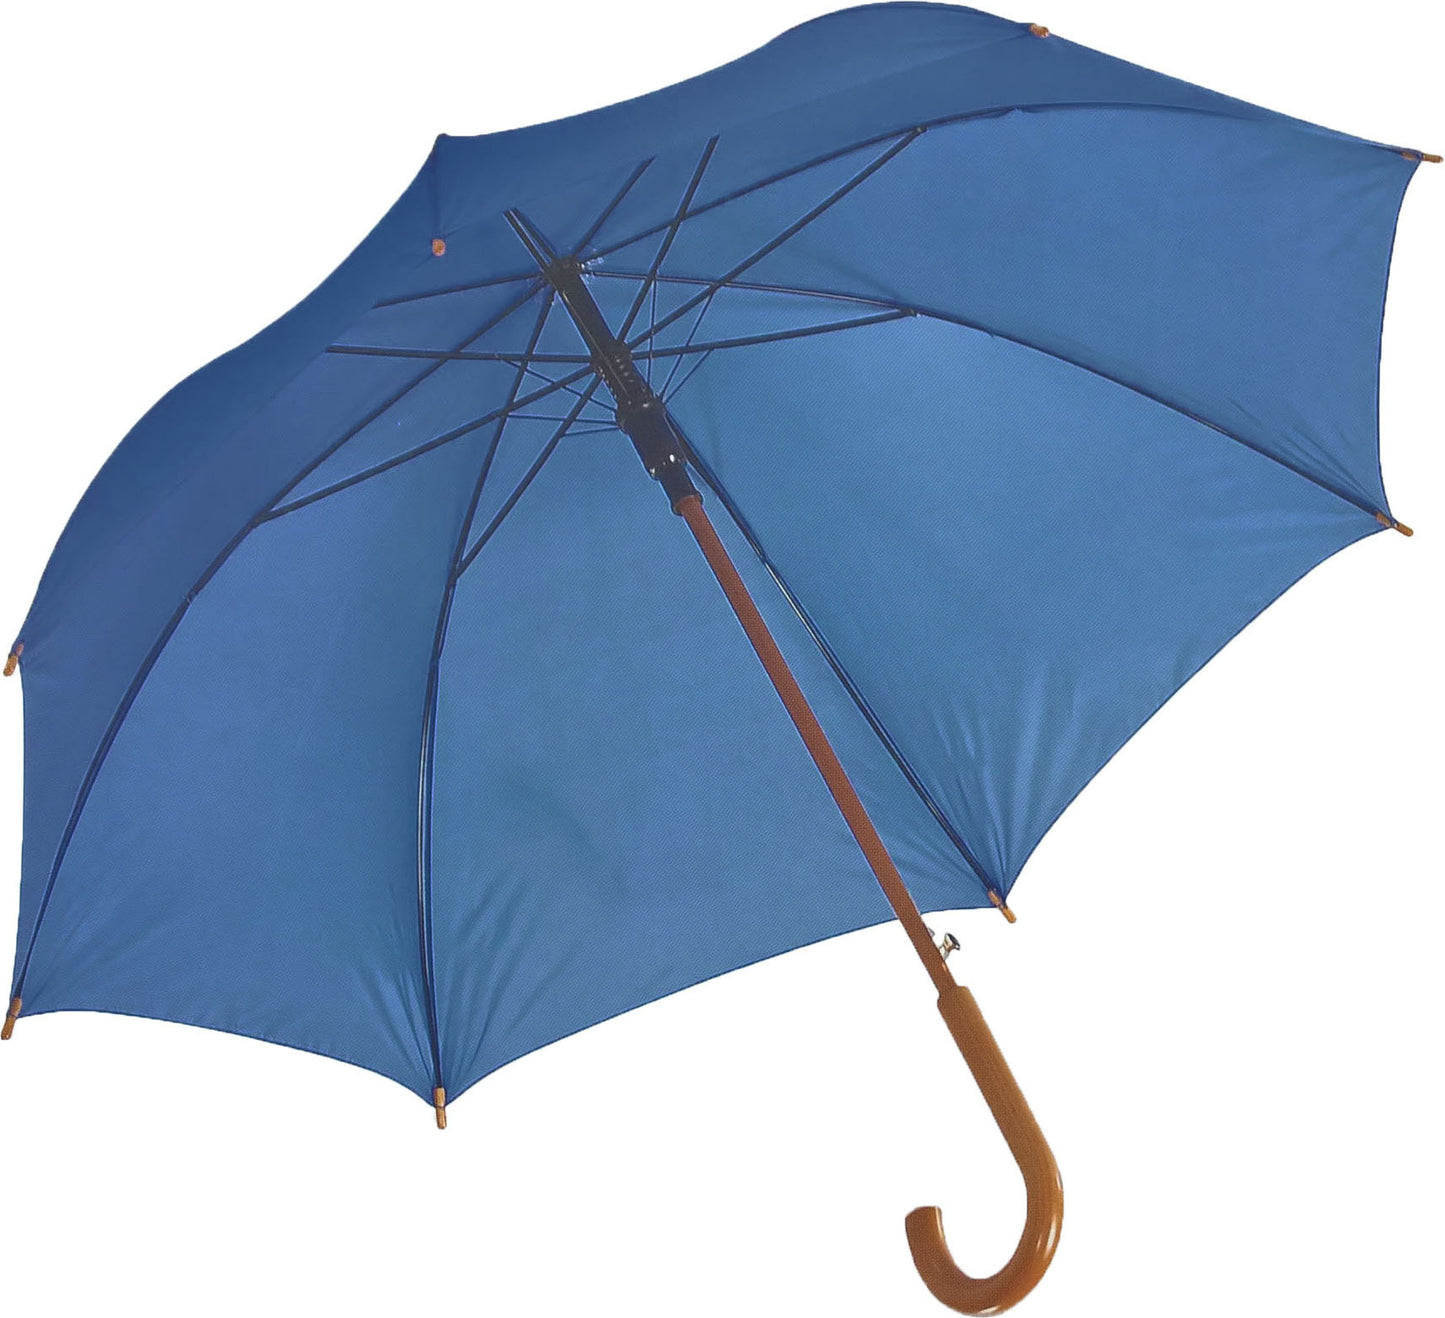 Μπλε Ρουά, Ομπρέλα Βροχής, Αυτόματη, με ξύλινη κυρτή λαβή (κωδικός 01-03-0328).